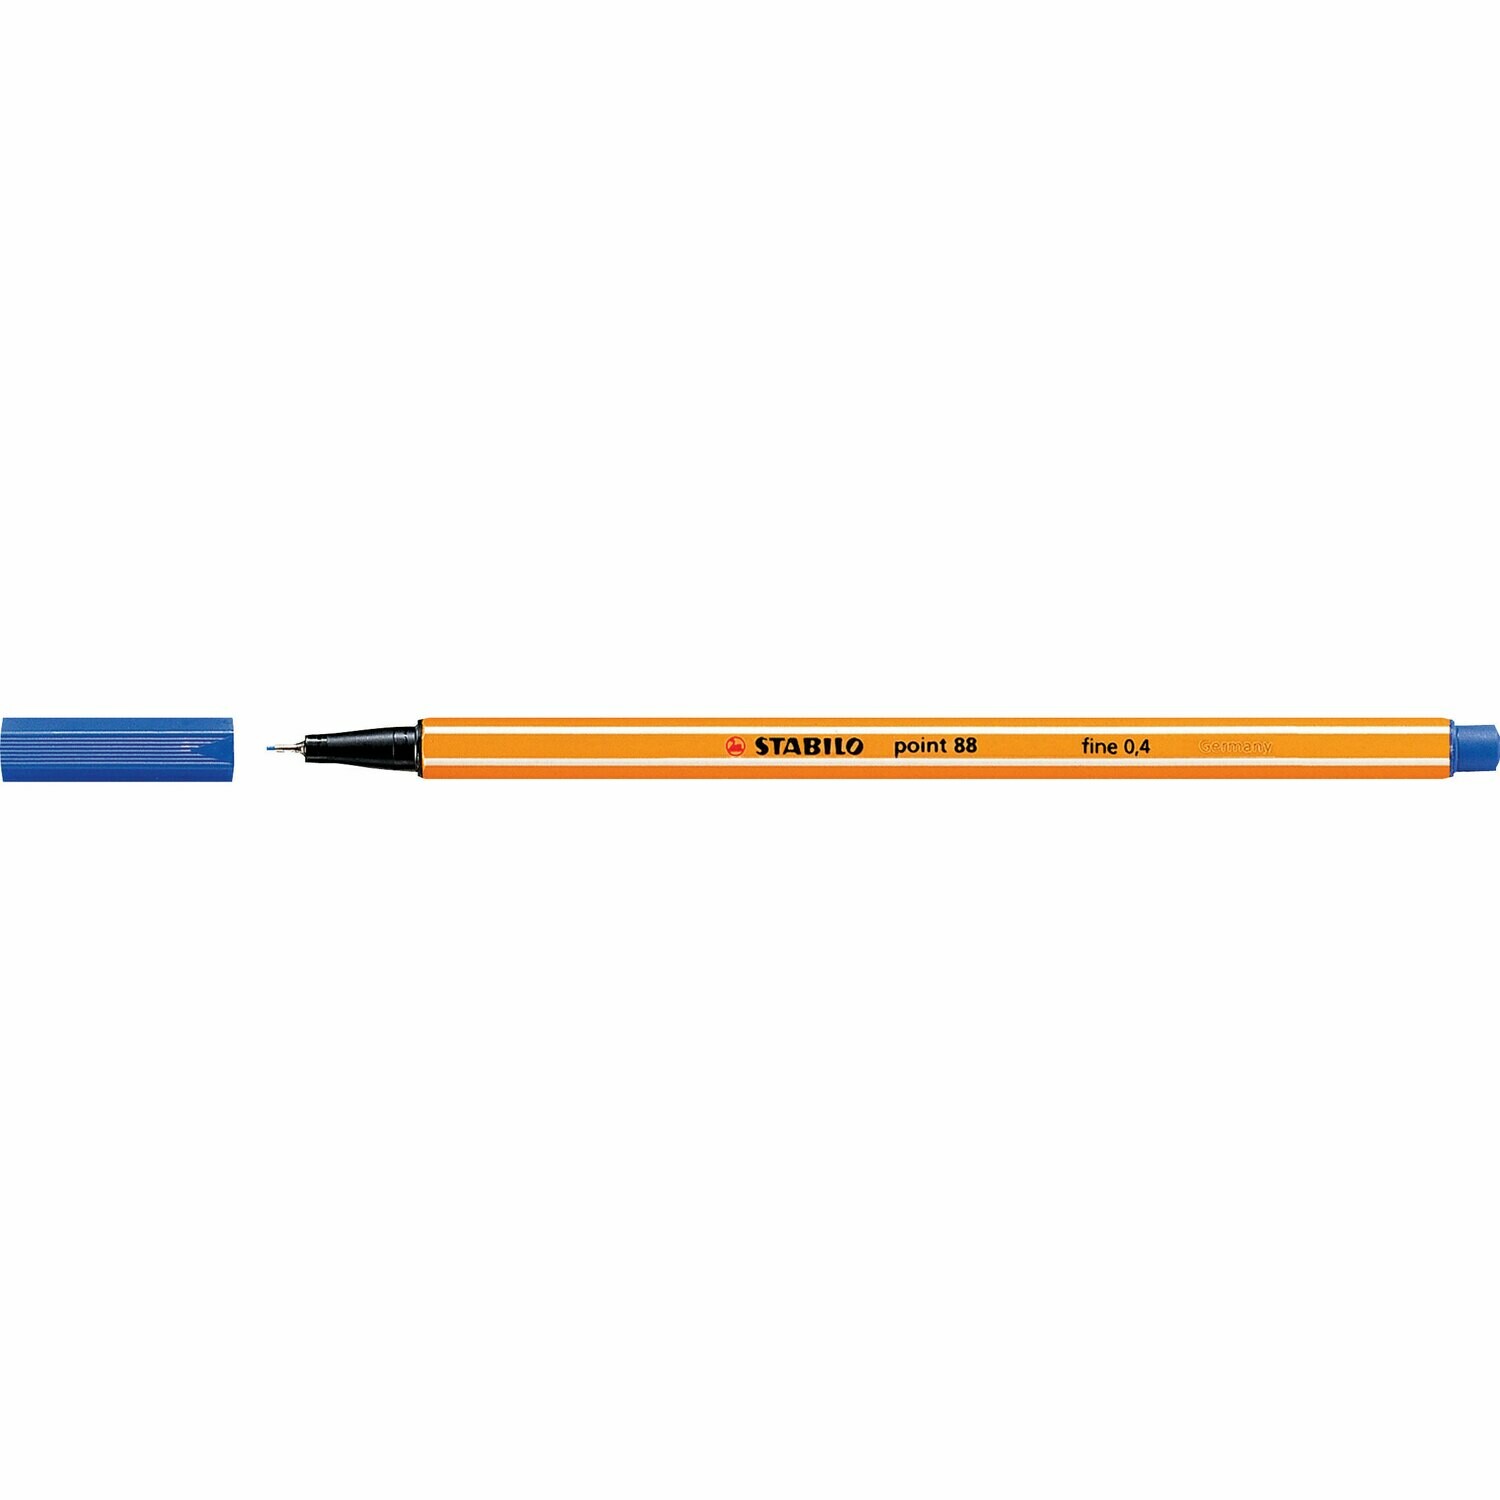 Pen, Fineliner, Point 88 Blue, 0.4 Mm, Single